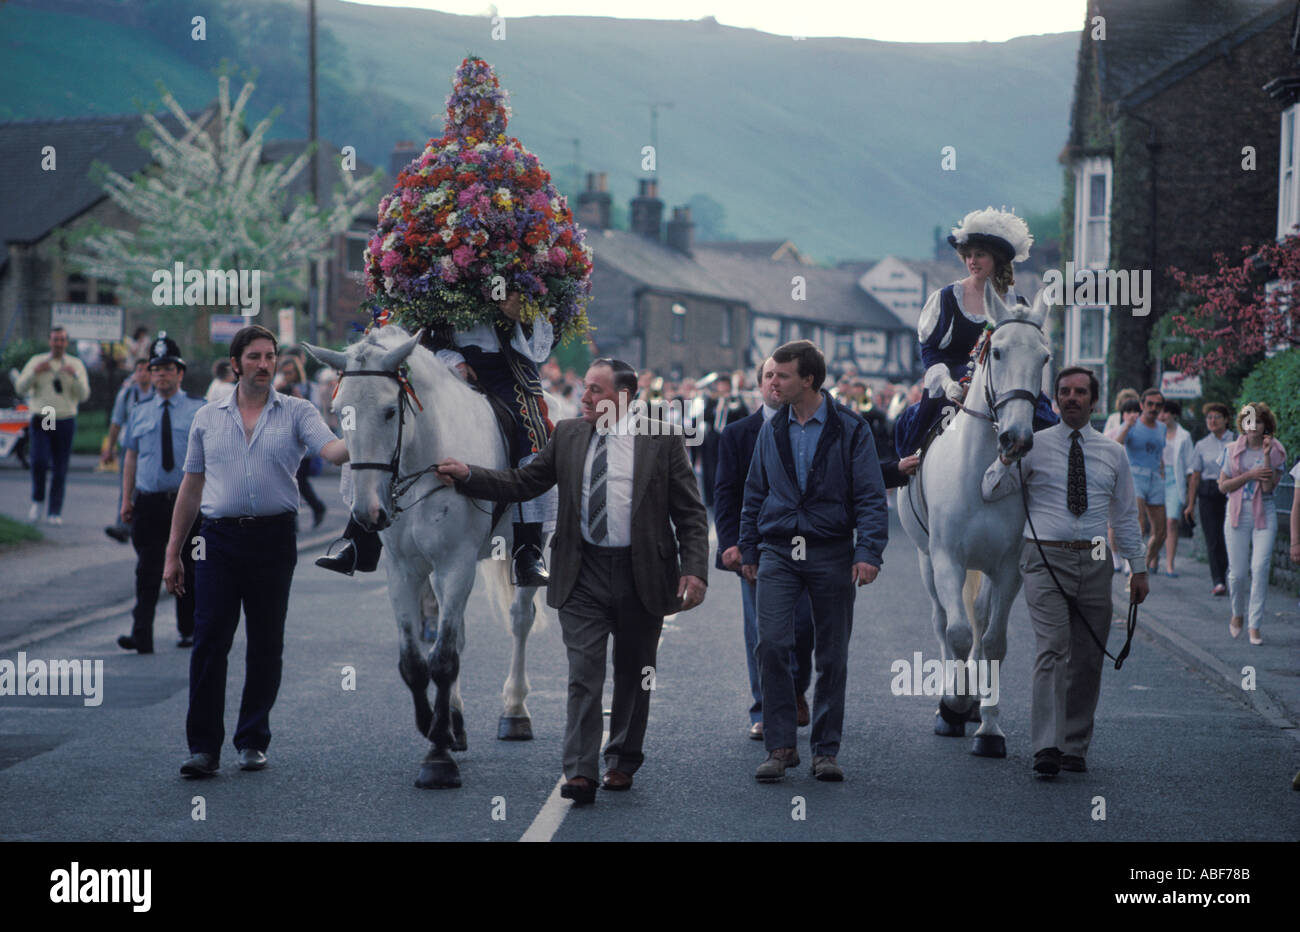 Castleton Garland Day. 29. Mai 1980. König und Königin König unter Girlande von Blumen, die auf dem Kirchturm platziert ist. DERBYSHIRE UK HOMER SYKES Stockfoto